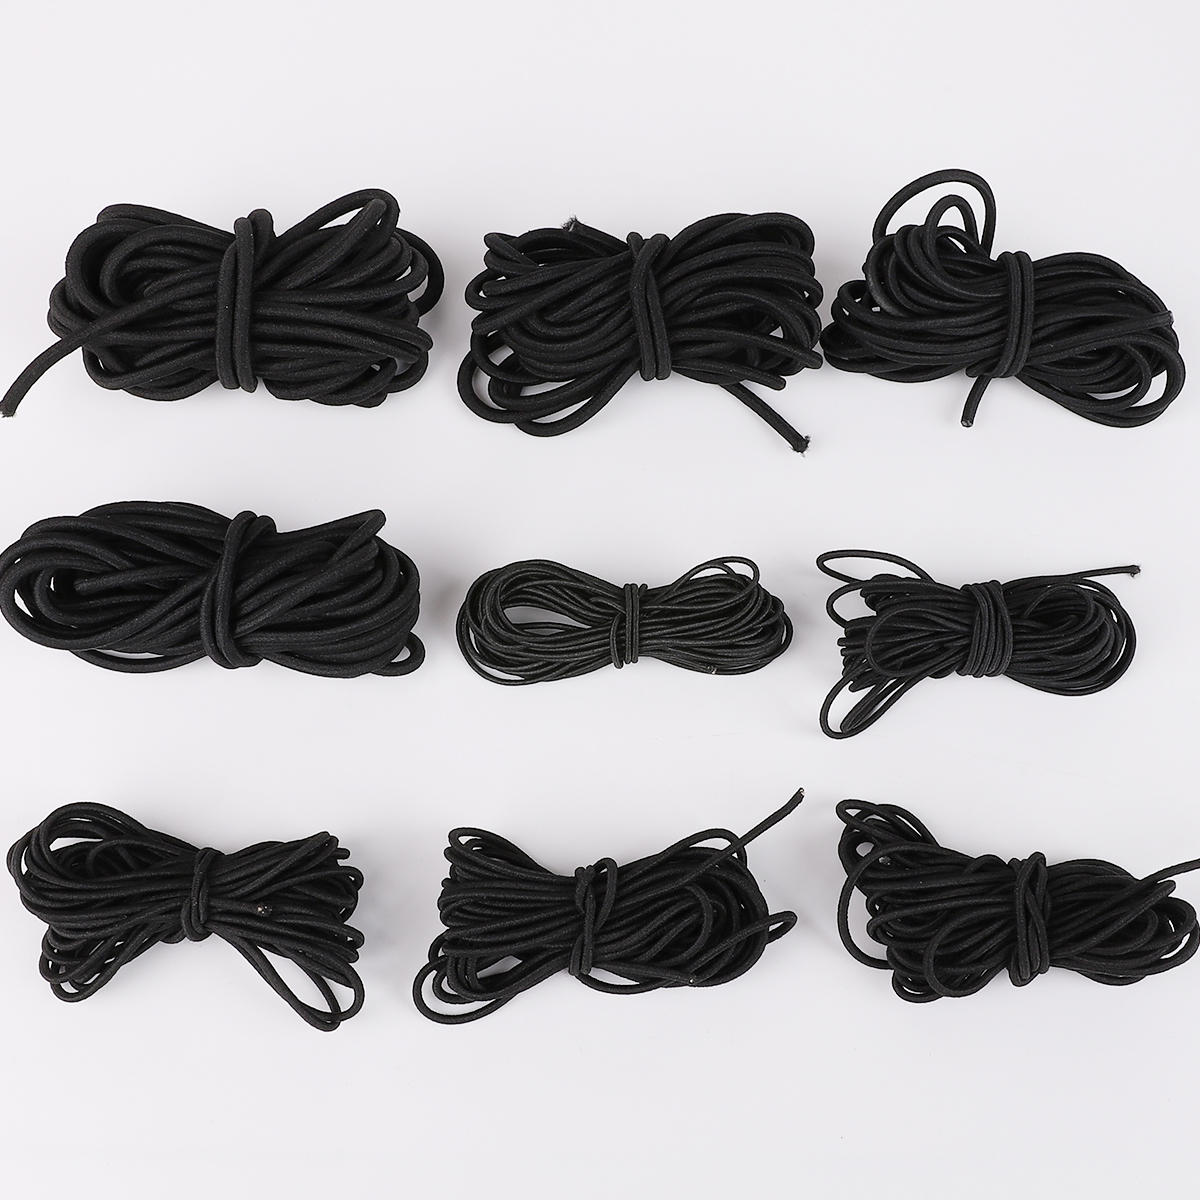 2 m/Beutel schwarzer runde Form Elastic Bungee Kabel für Gummibänder Armbänder Halskette Machen Kleidung Nähzubehör machen